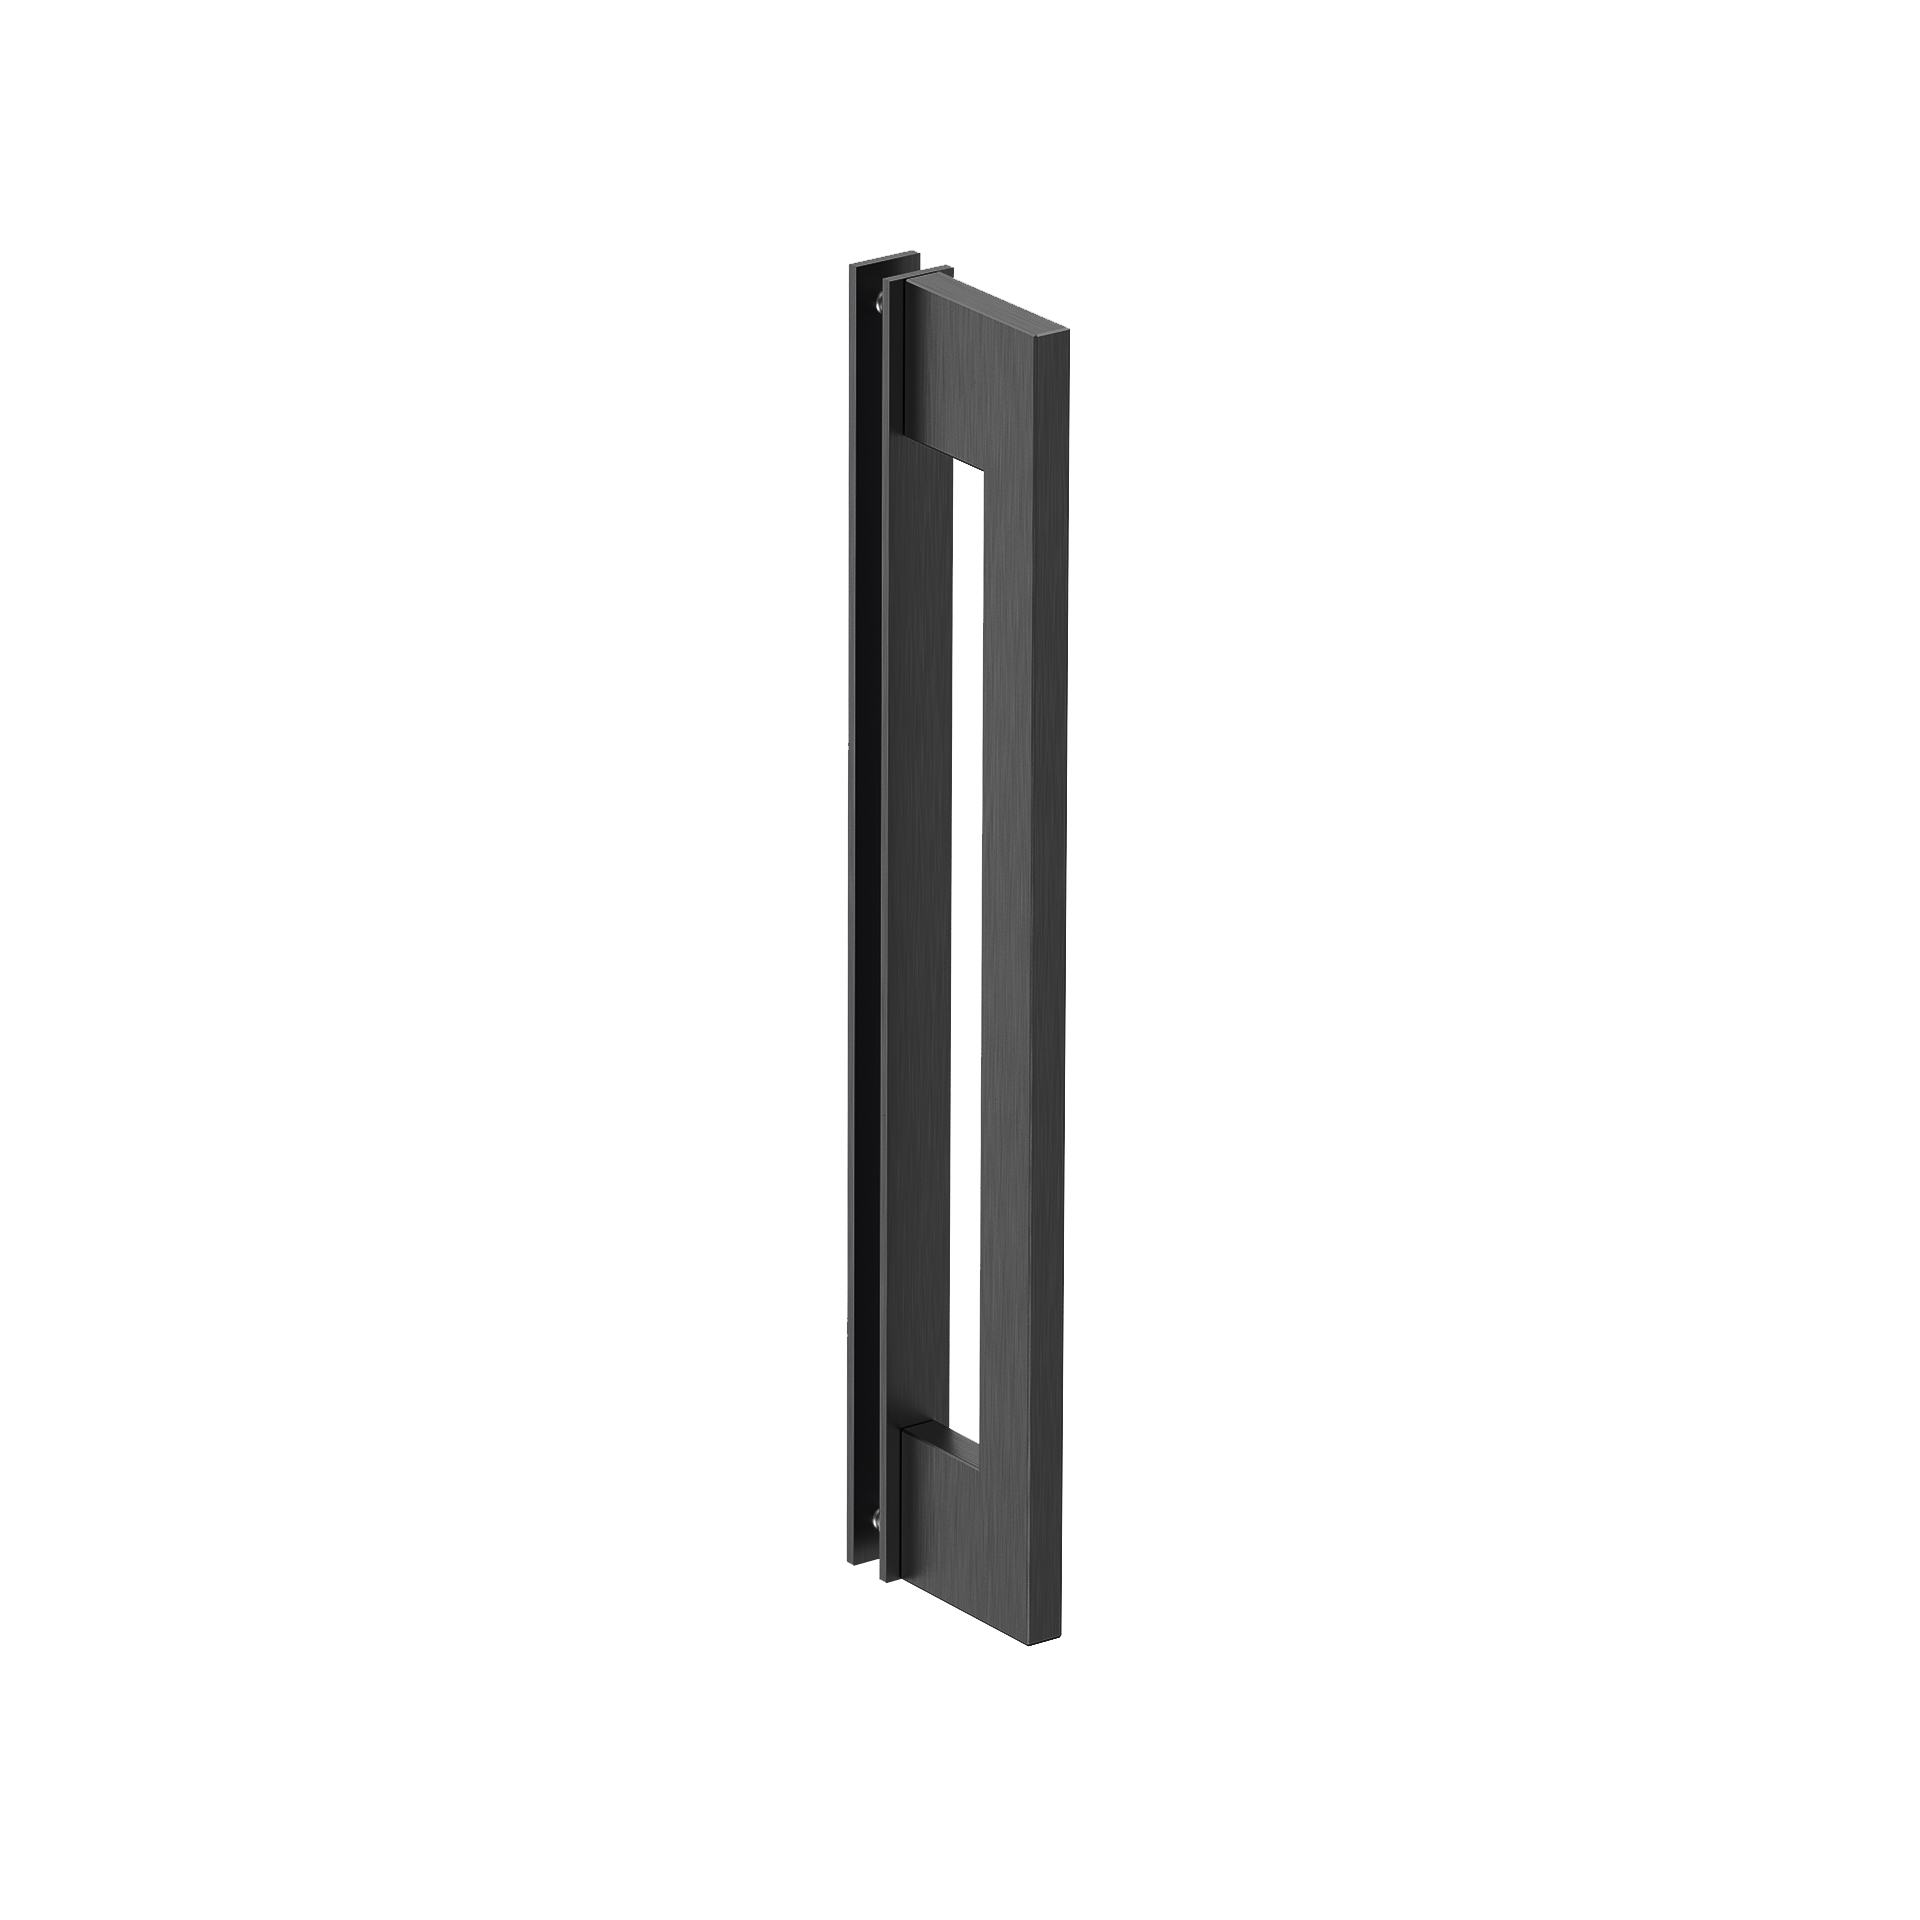 Tirador de puerta tipo H 600mm - IN.07.286.D.30.600 - Abstracta Soluciones